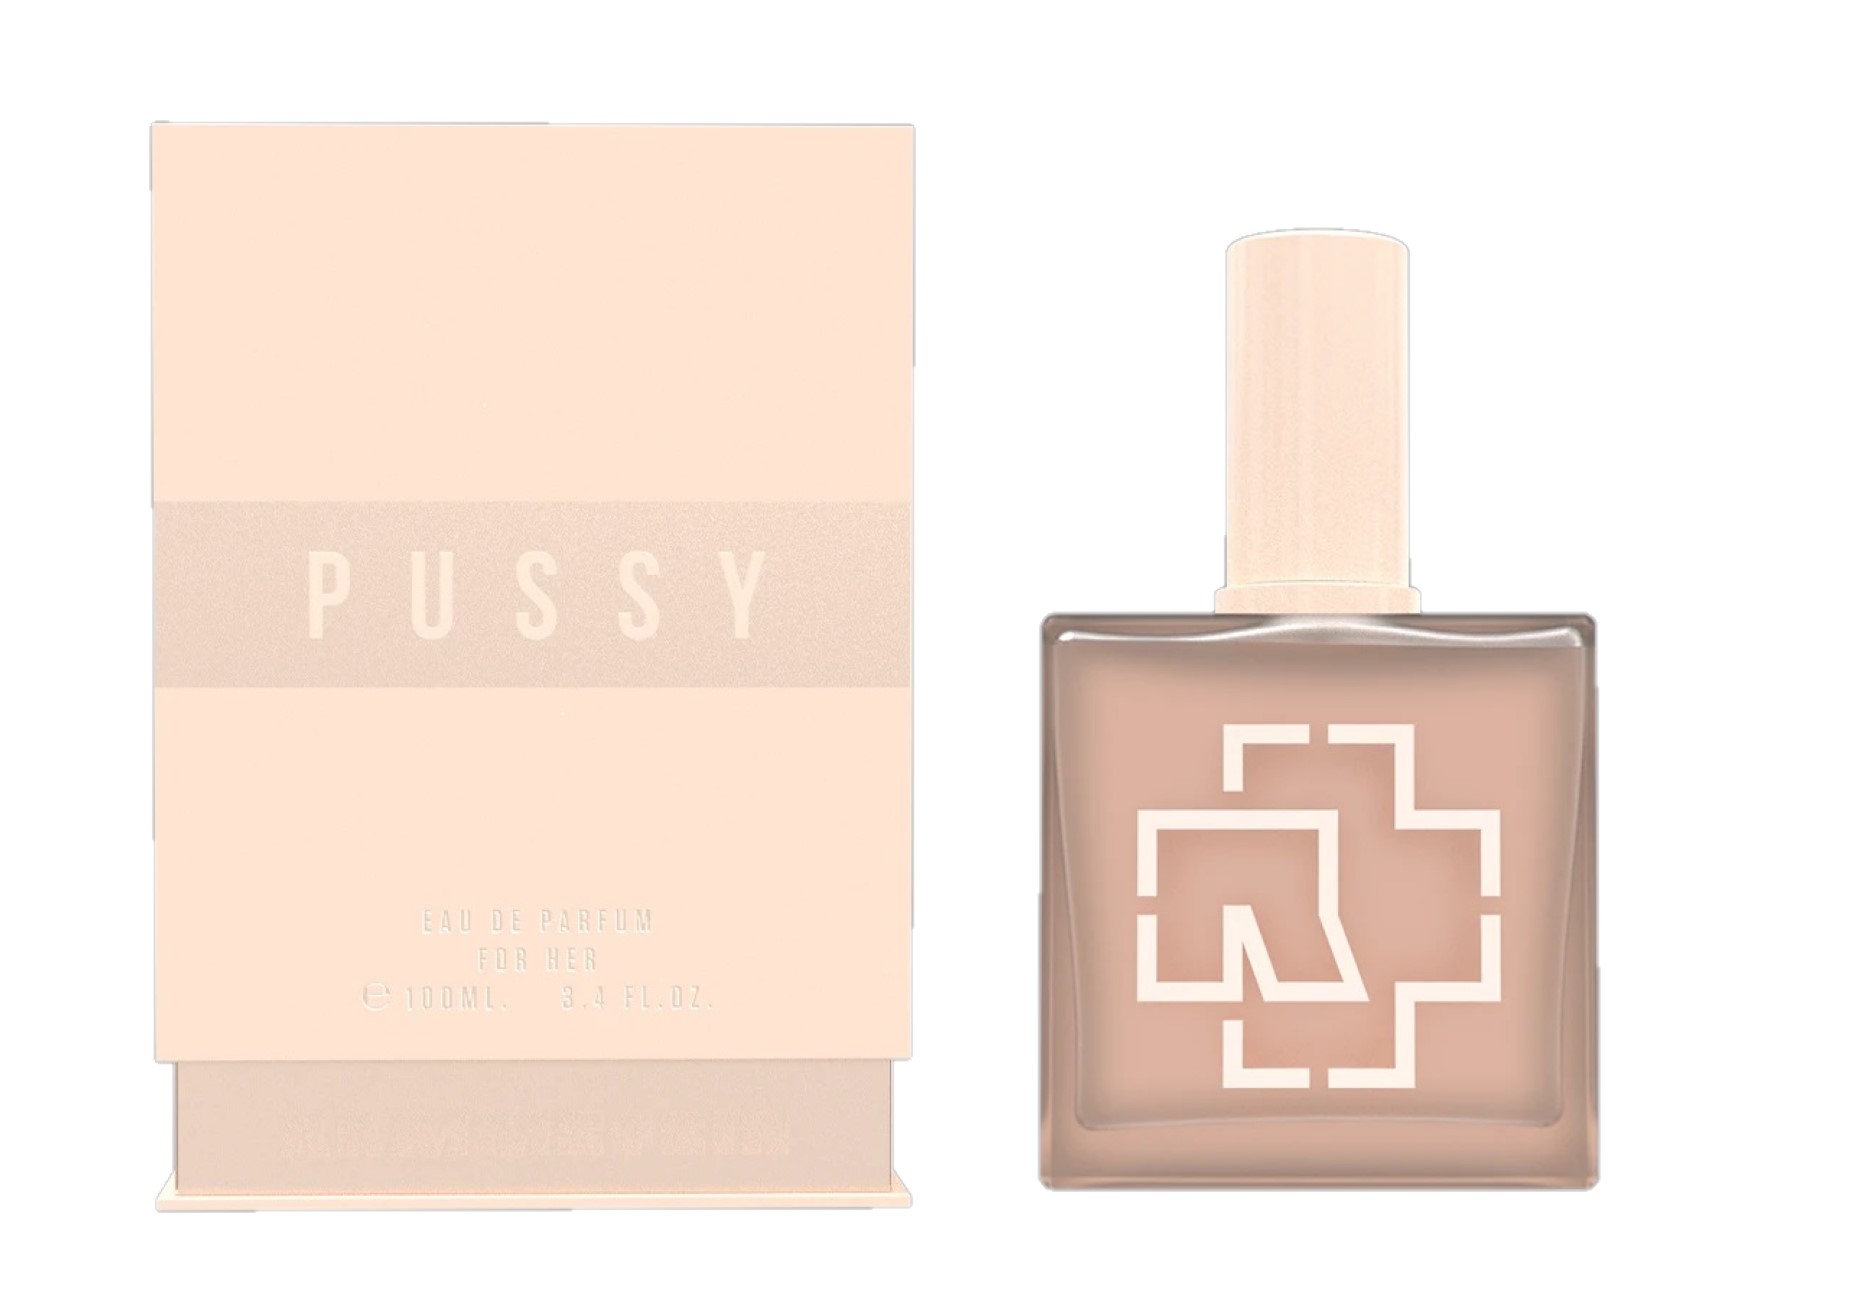 Rammstein verkaufen neues Parfüm Pussy